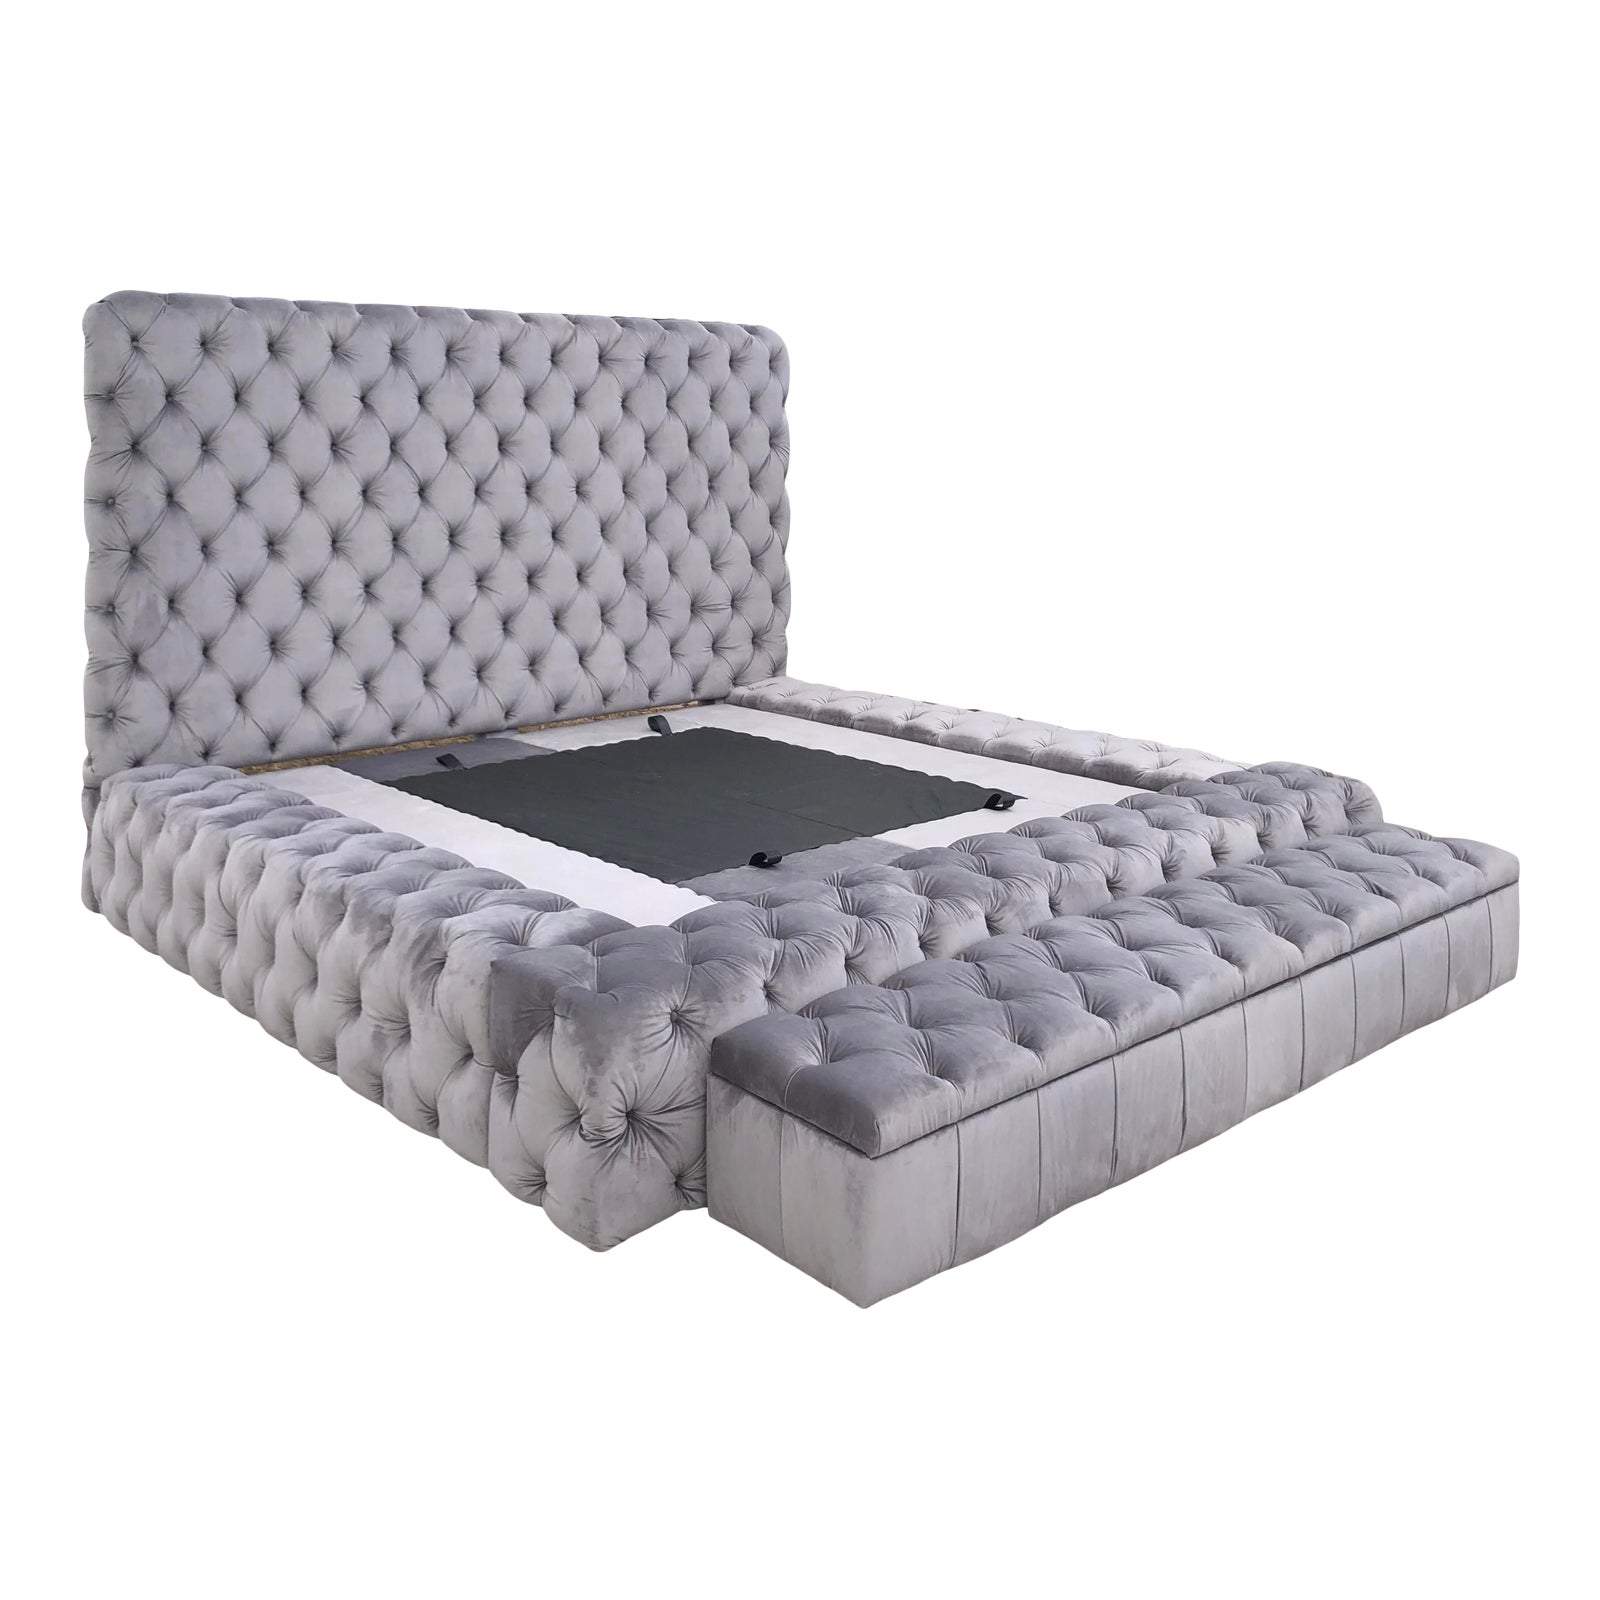 Tufted Platform King Bedframe & Upholstered Storage Bench Home Office Garden | HOG-HomeOfficeGarden | online marketplace